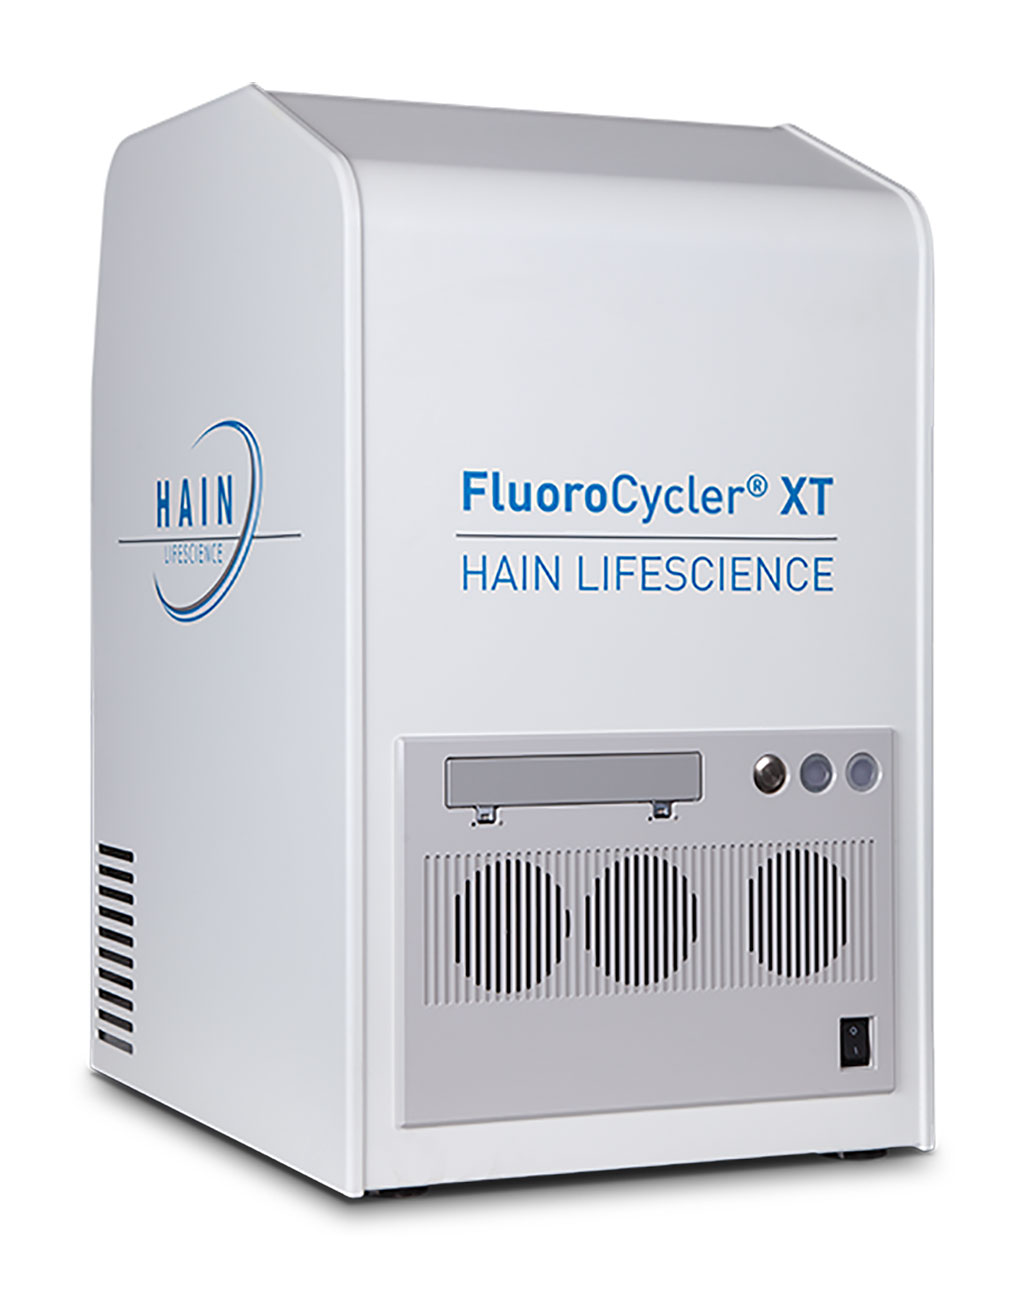 Image: FluoroCycler® XT (Photo courtesy of Bruker Corporation)